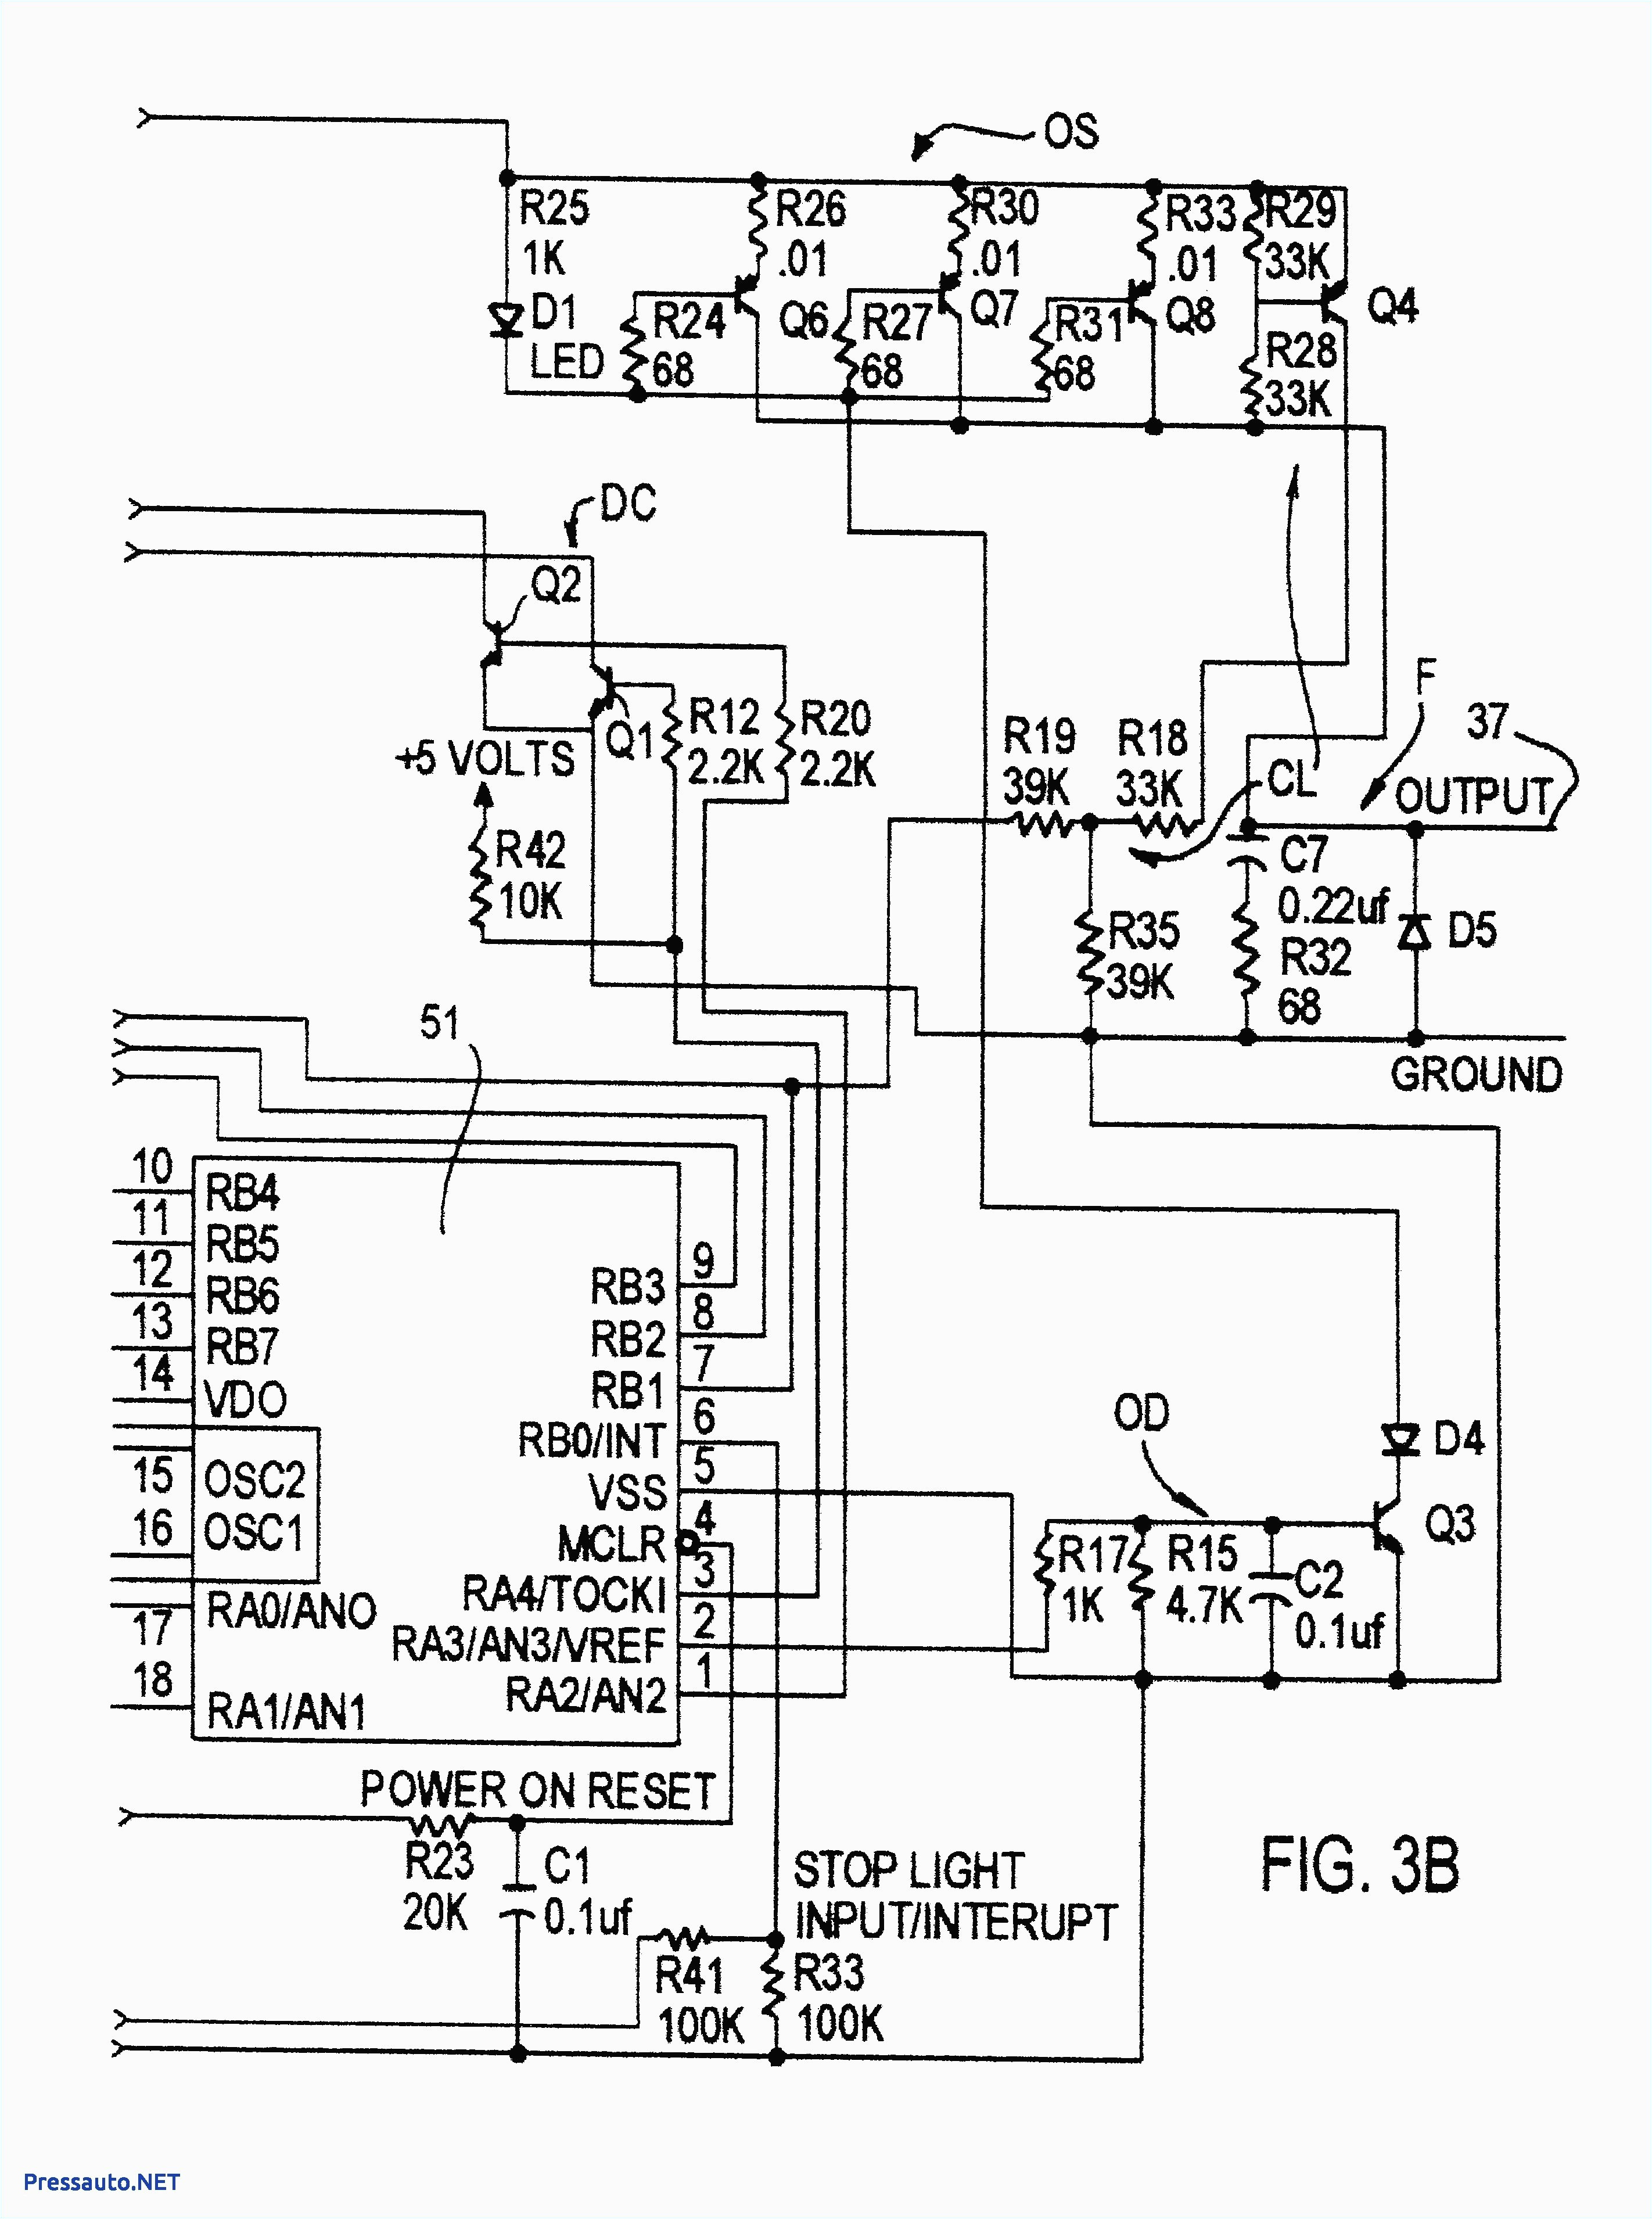 110v schematic wiring diagram free download schematic wiring 2010 corolla wiring diagram free download schematic